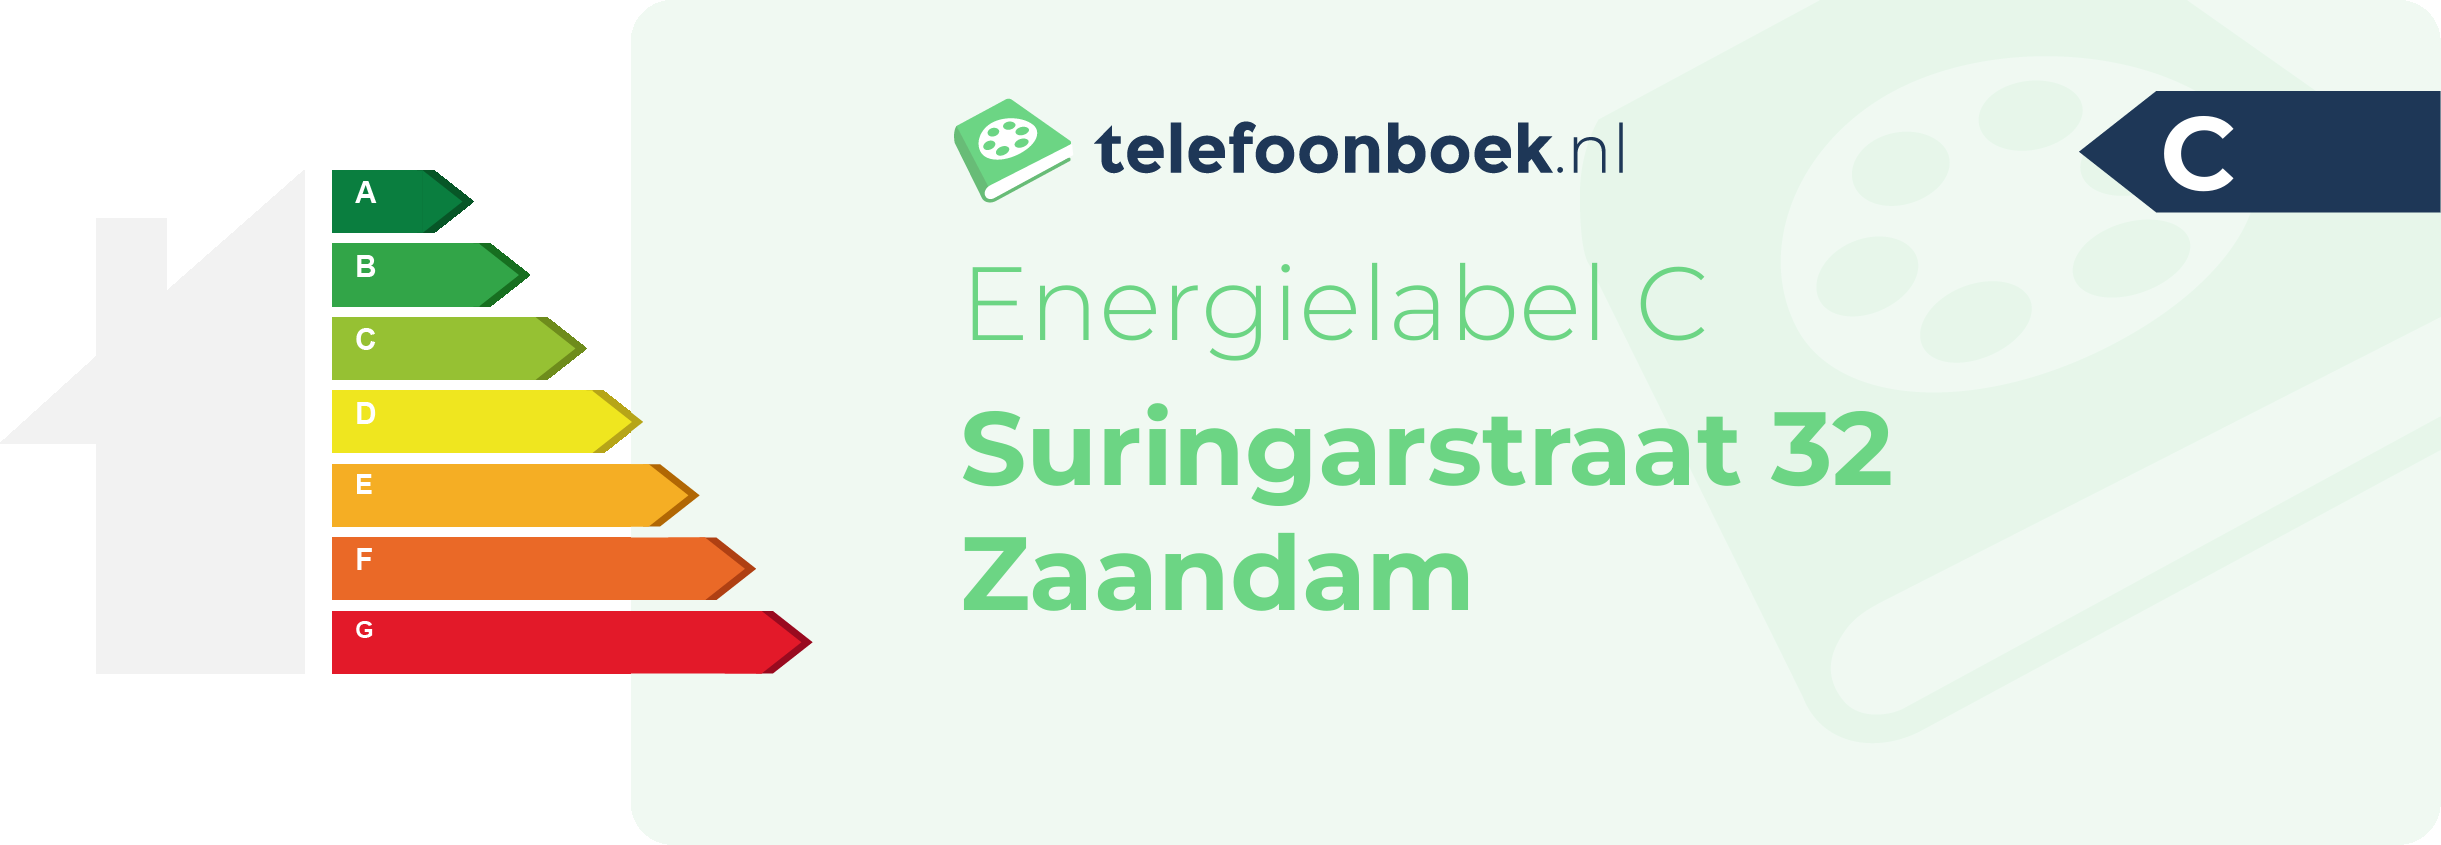 Energielabel Suringarstraat 32 Zaandam